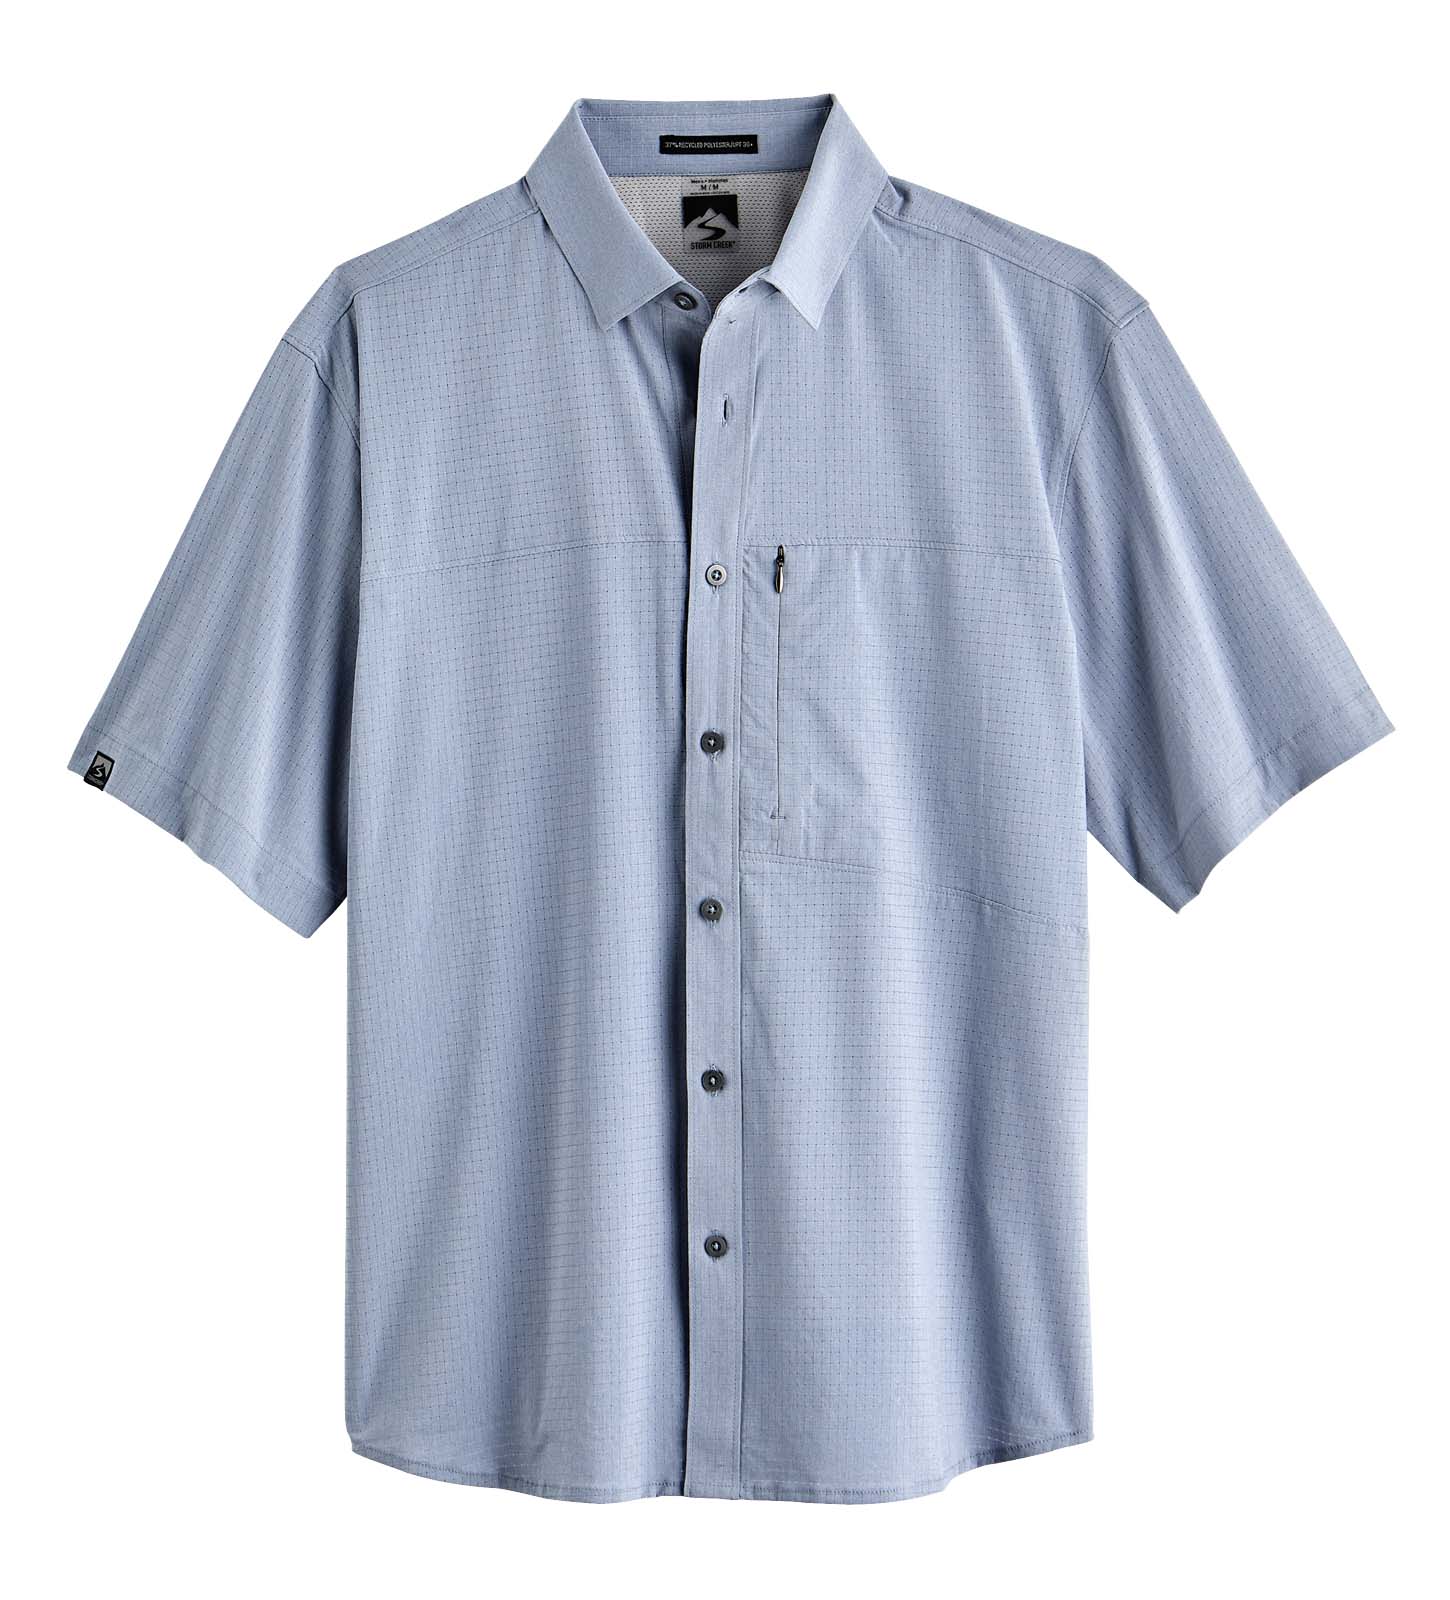 Storm Creek 2480 - Men's Naturalist Short Sleeve Woven Shirt